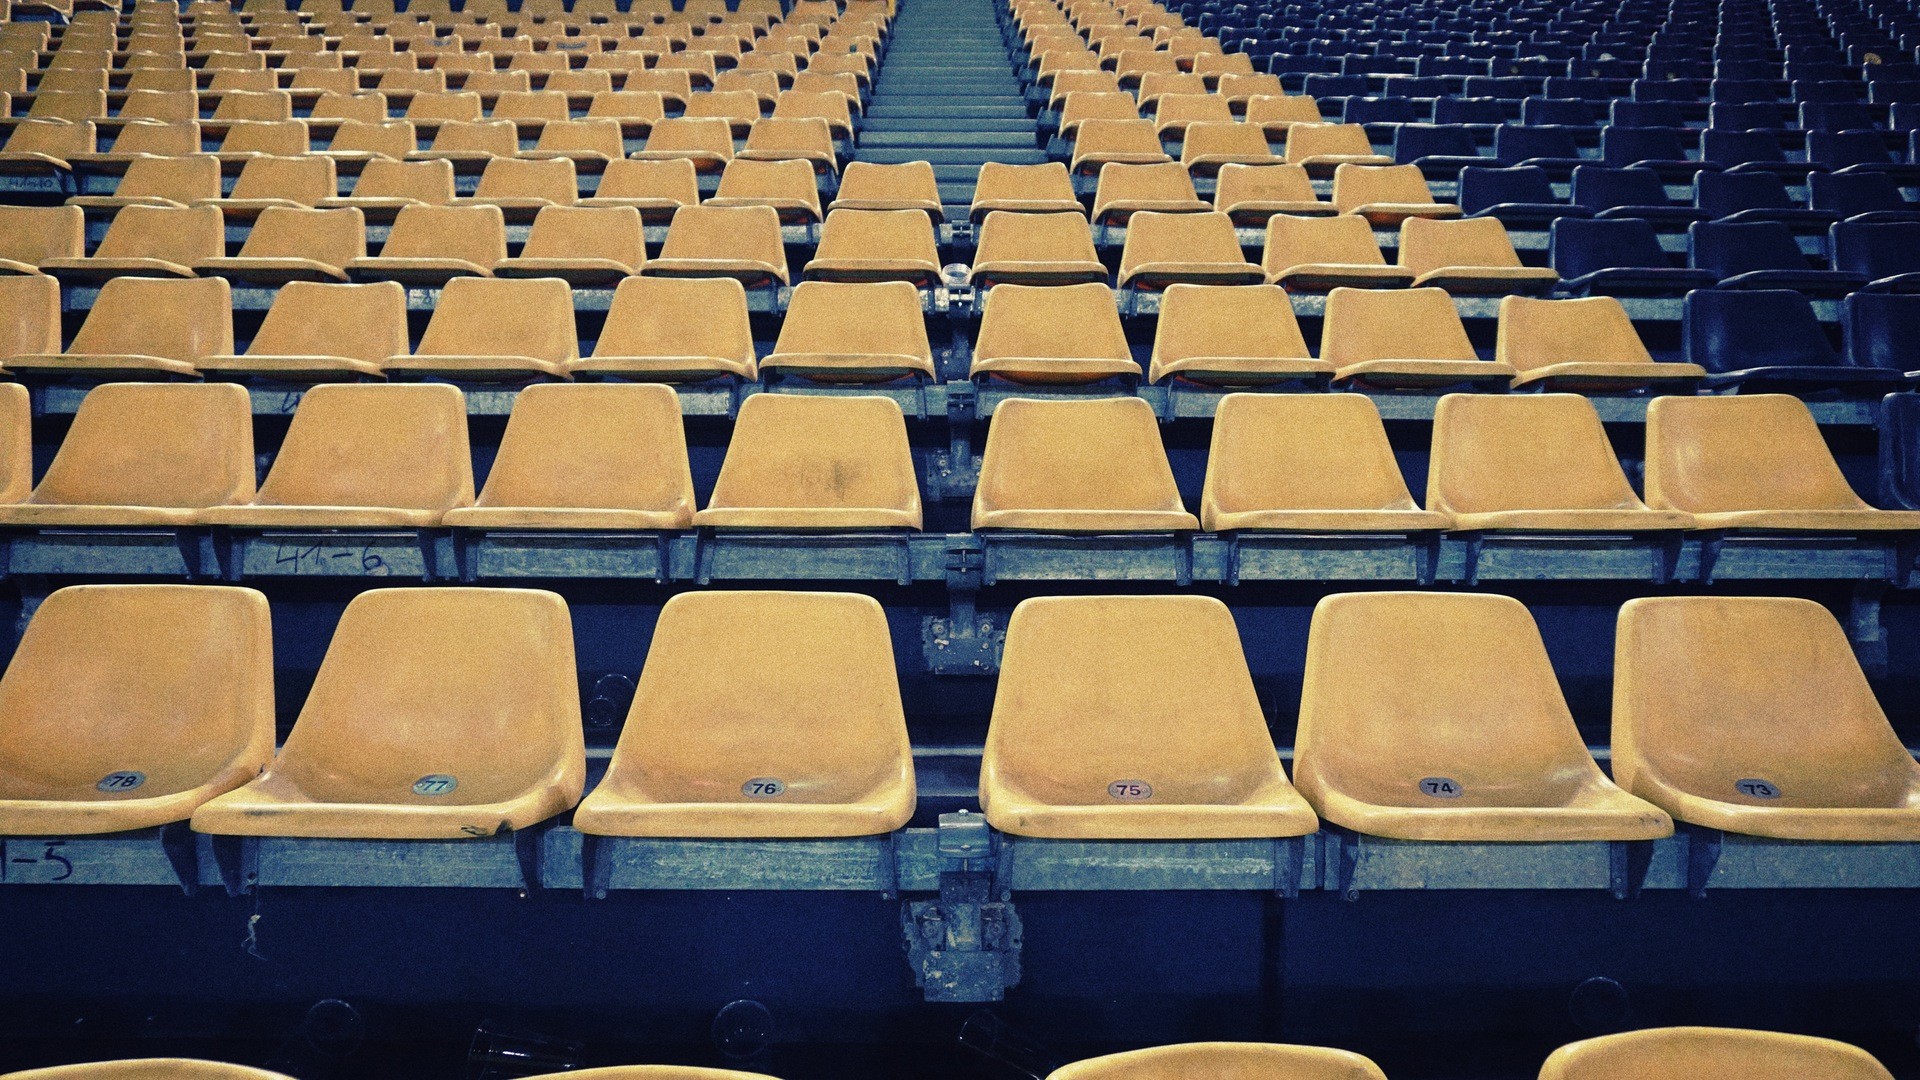 Chair Stadium 1920x1080